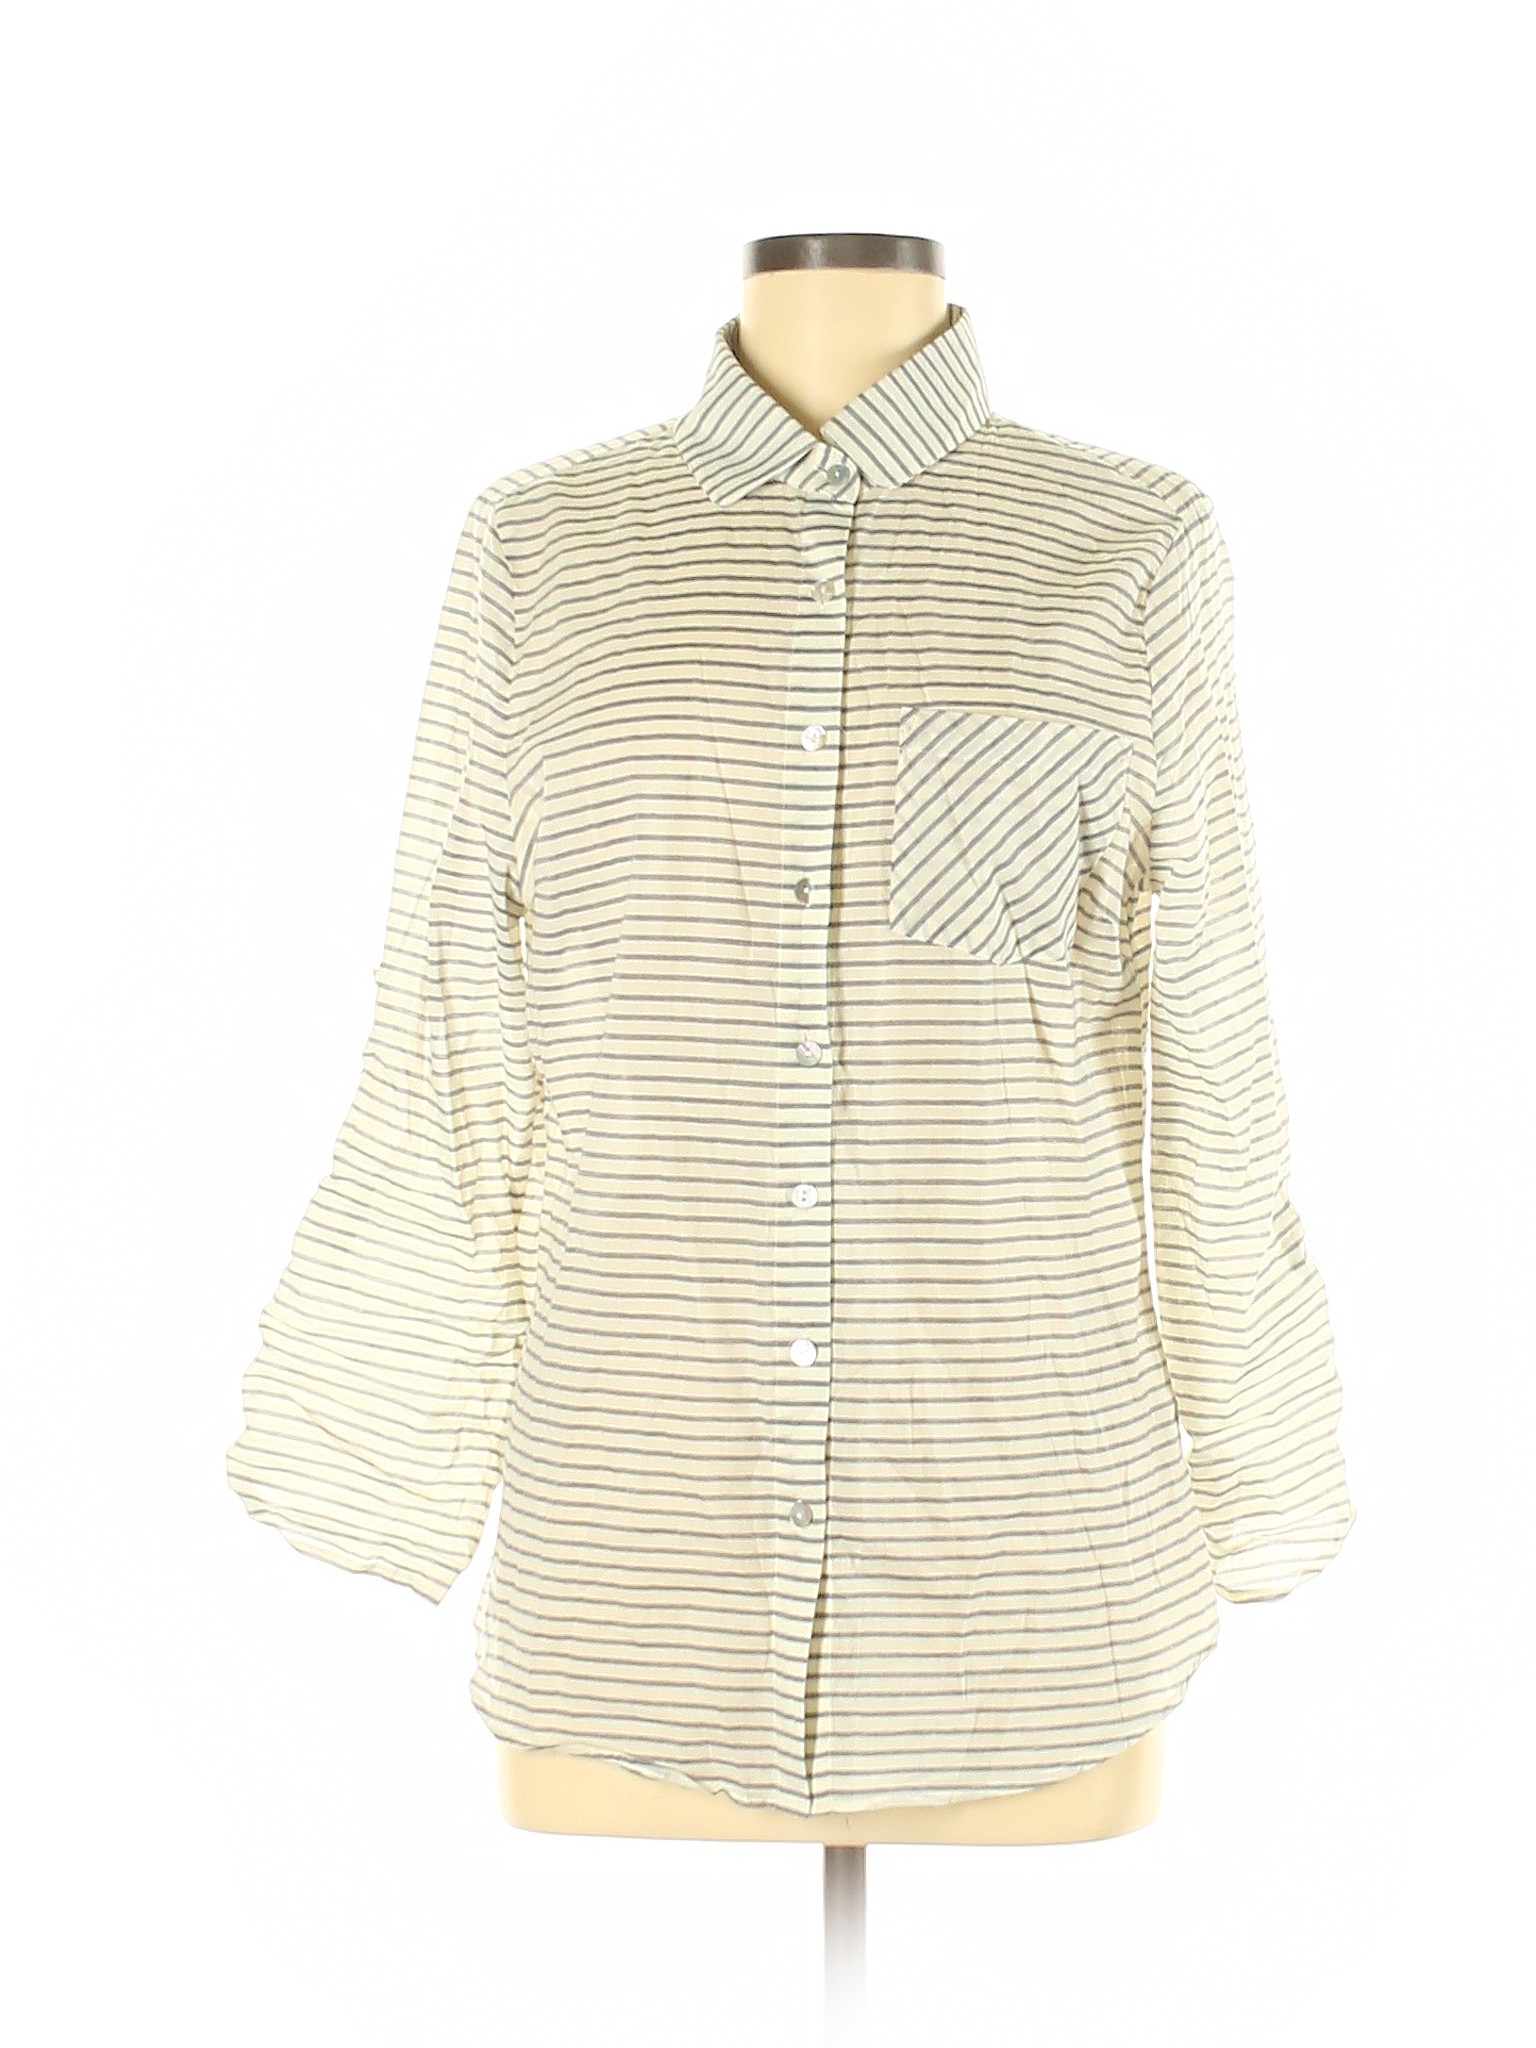 Assorted Brands Women Yellow 3/4 Sleeve Button-Down Shirt M | eBay